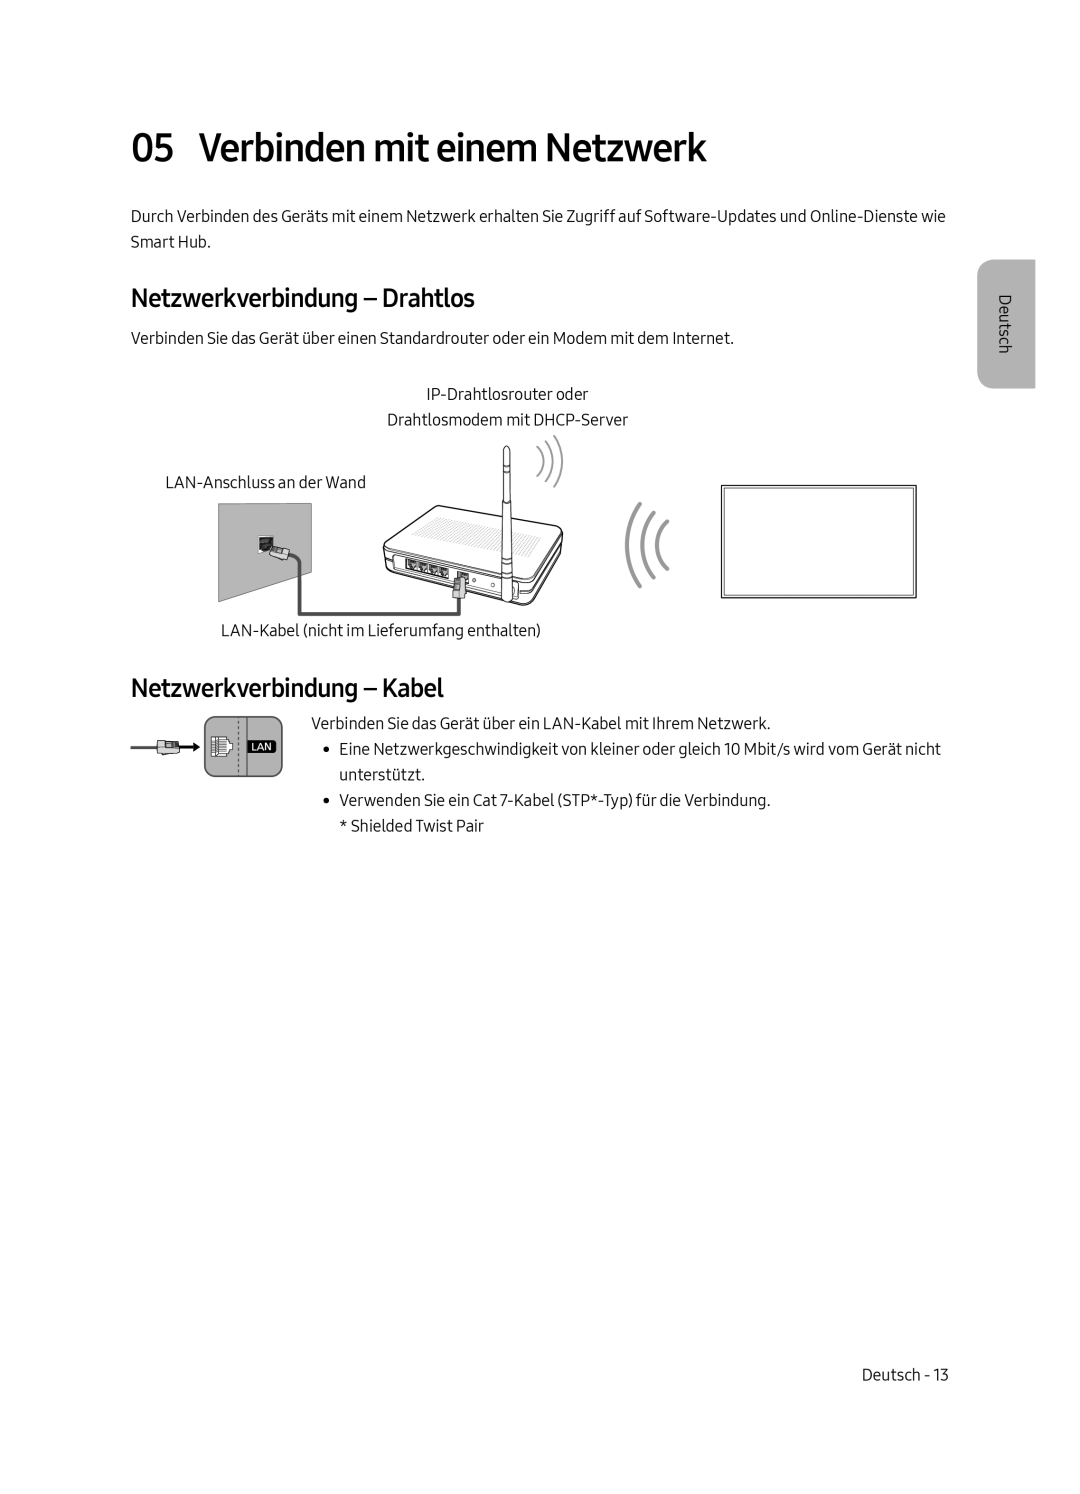 Samsung UE49MU9000TXXU manual Verbinden mit einem Netzwerk, Netzwerkverbindung - Drahtlos, Netzwerkverbindung - Kabel 